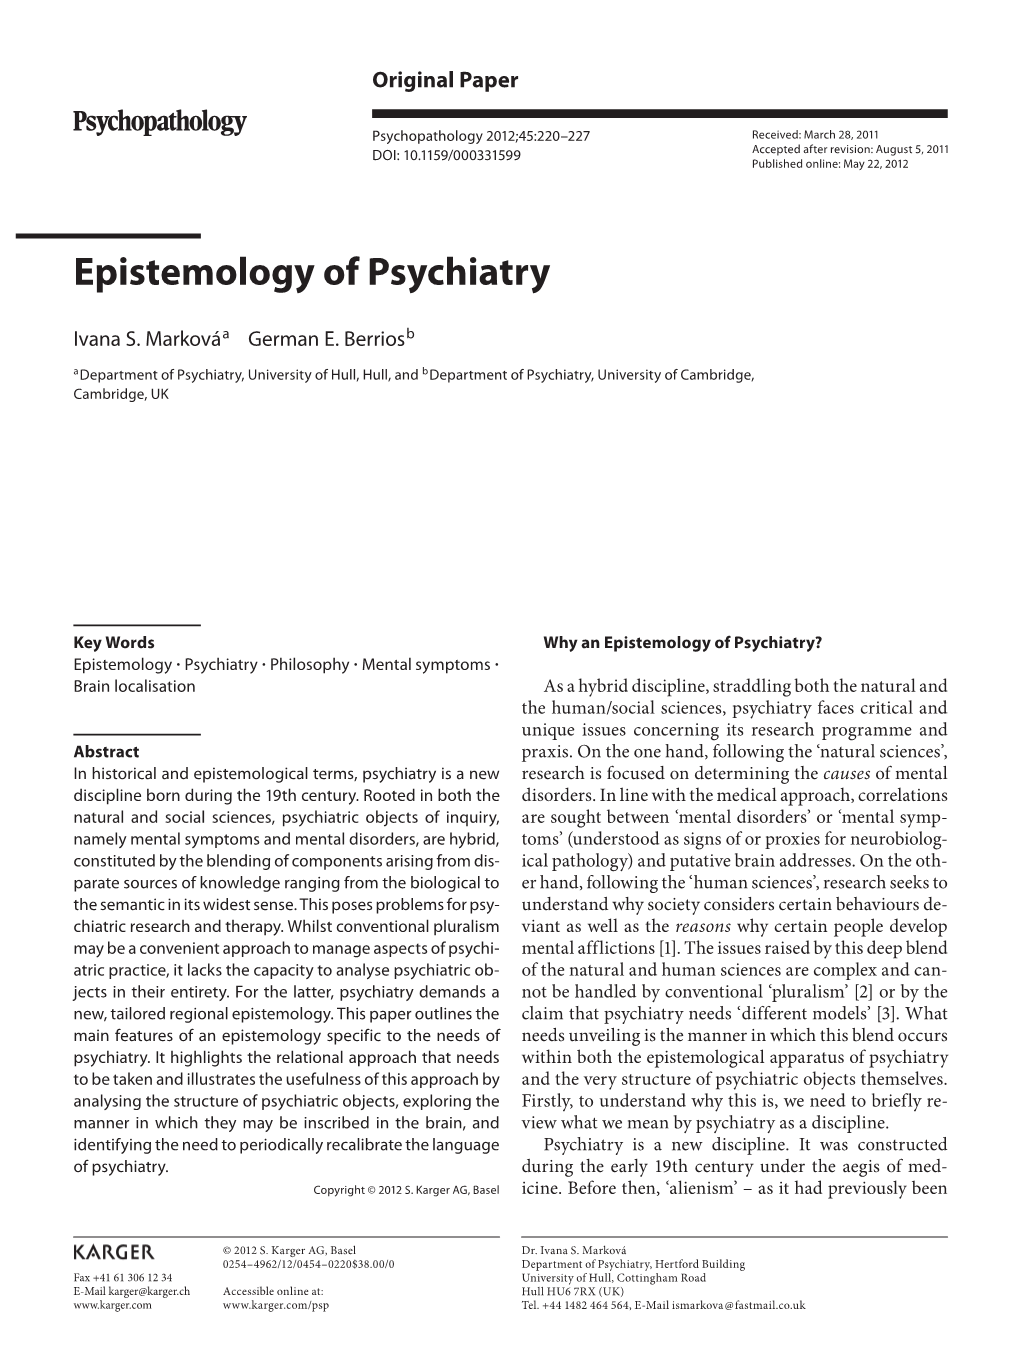 Epistemology of Psychiatry